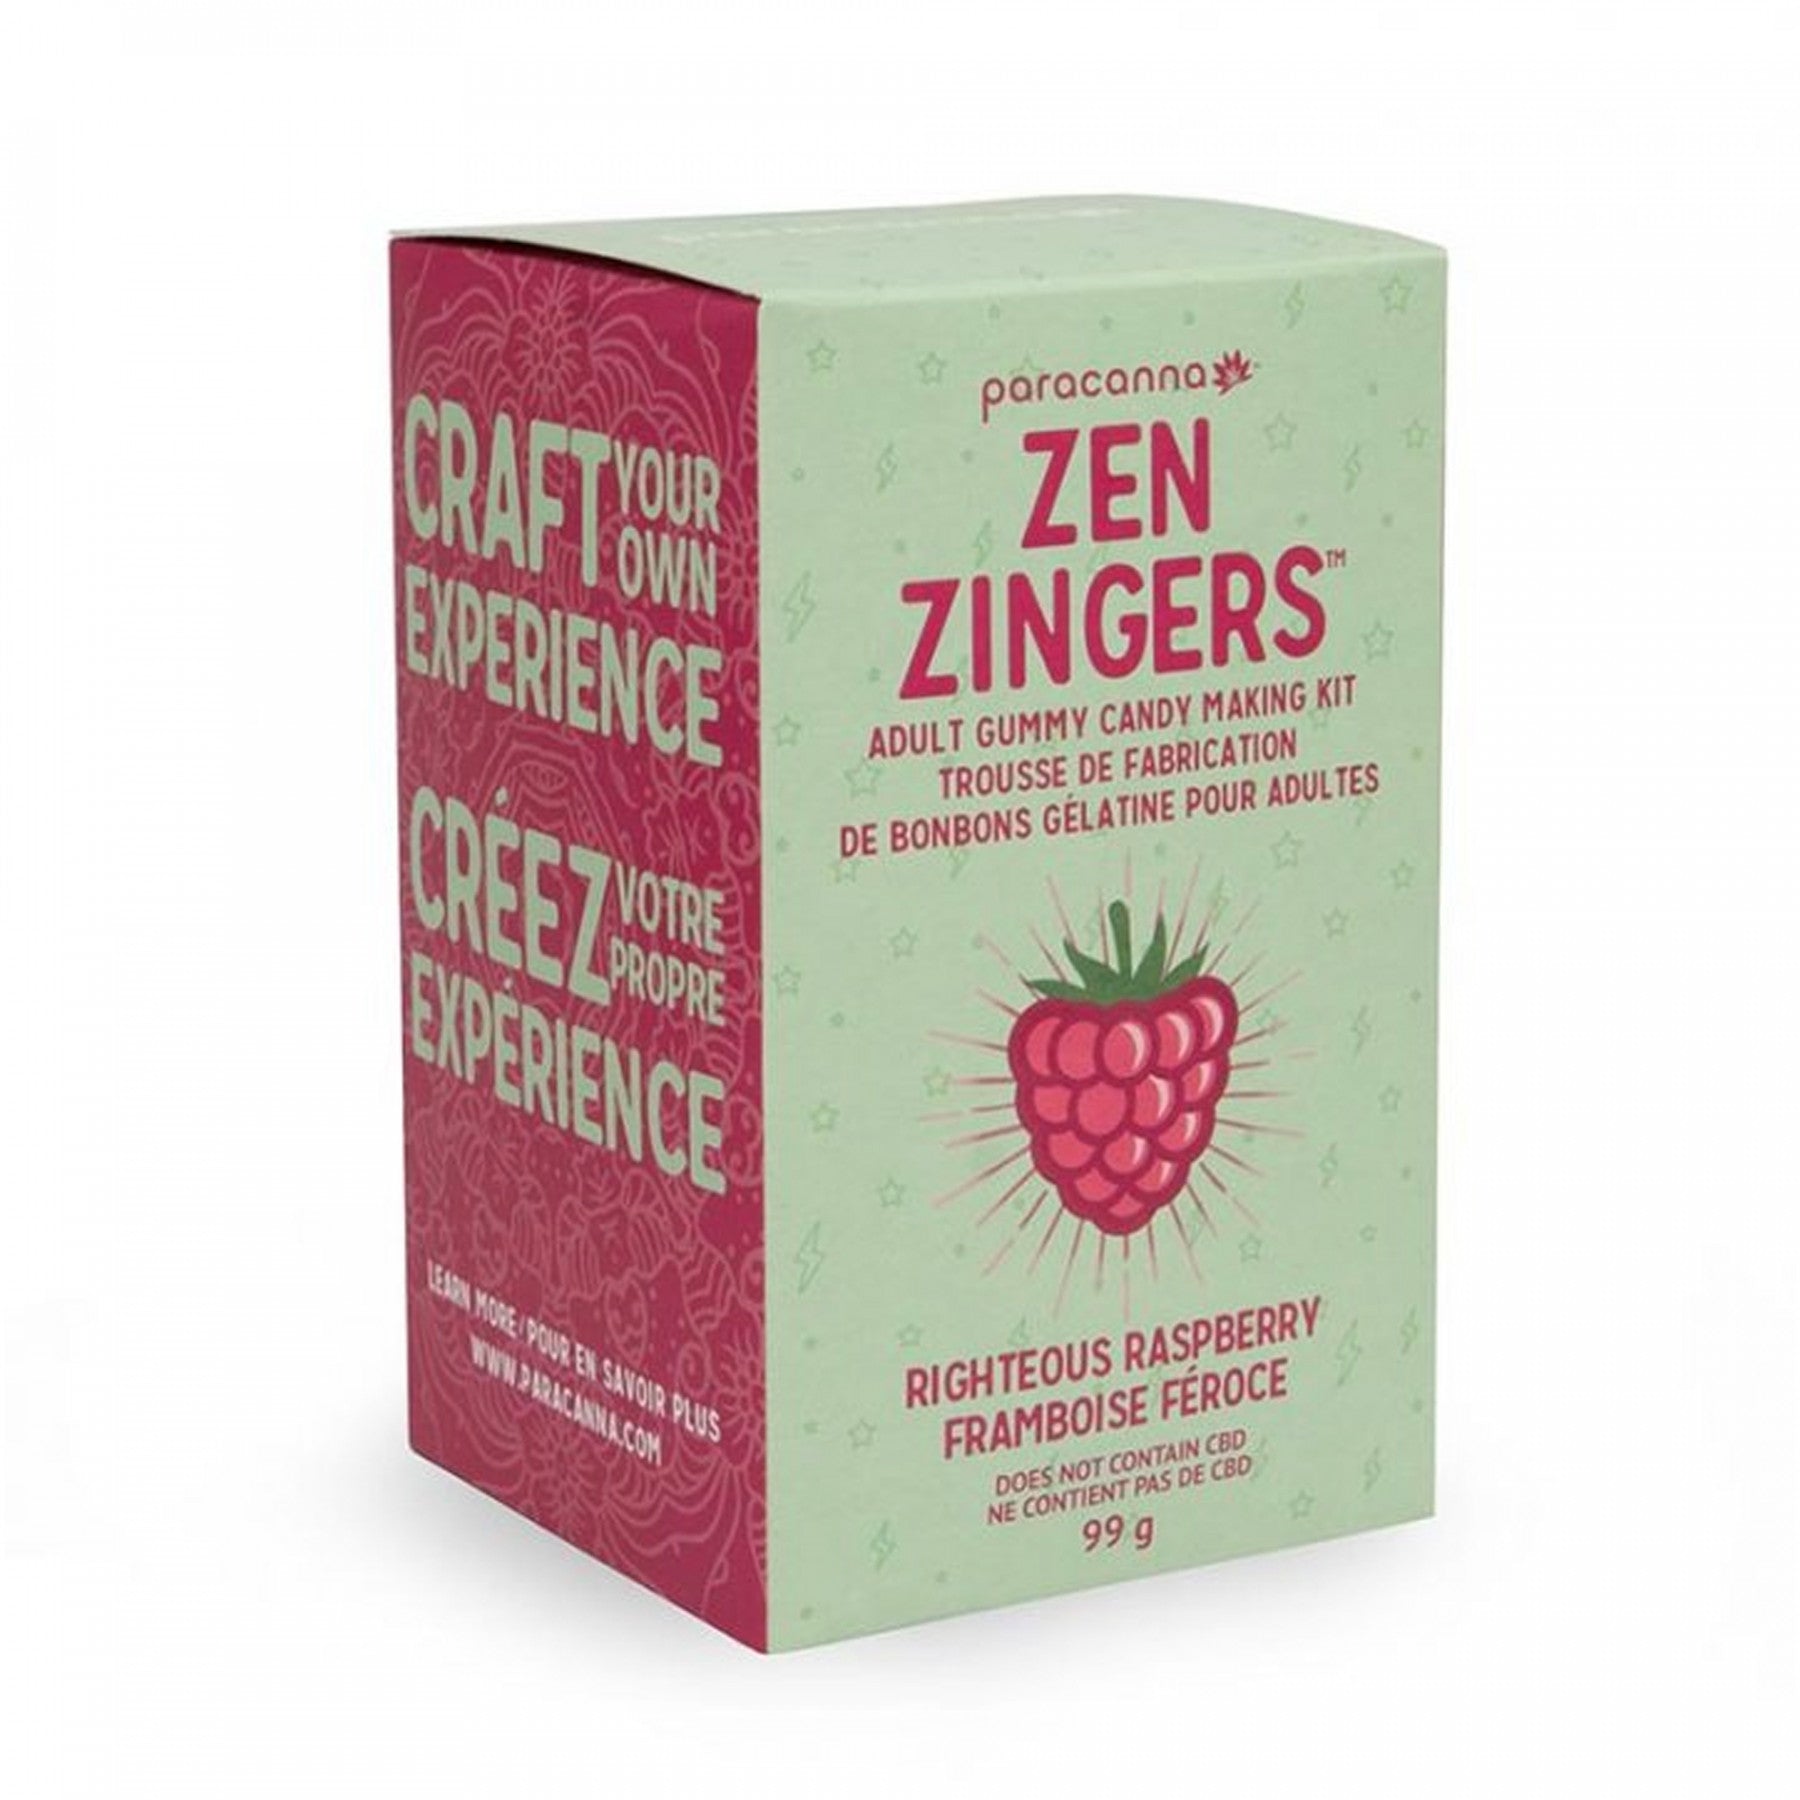 Zen Zinger Raspberry Gummy Making Kit.